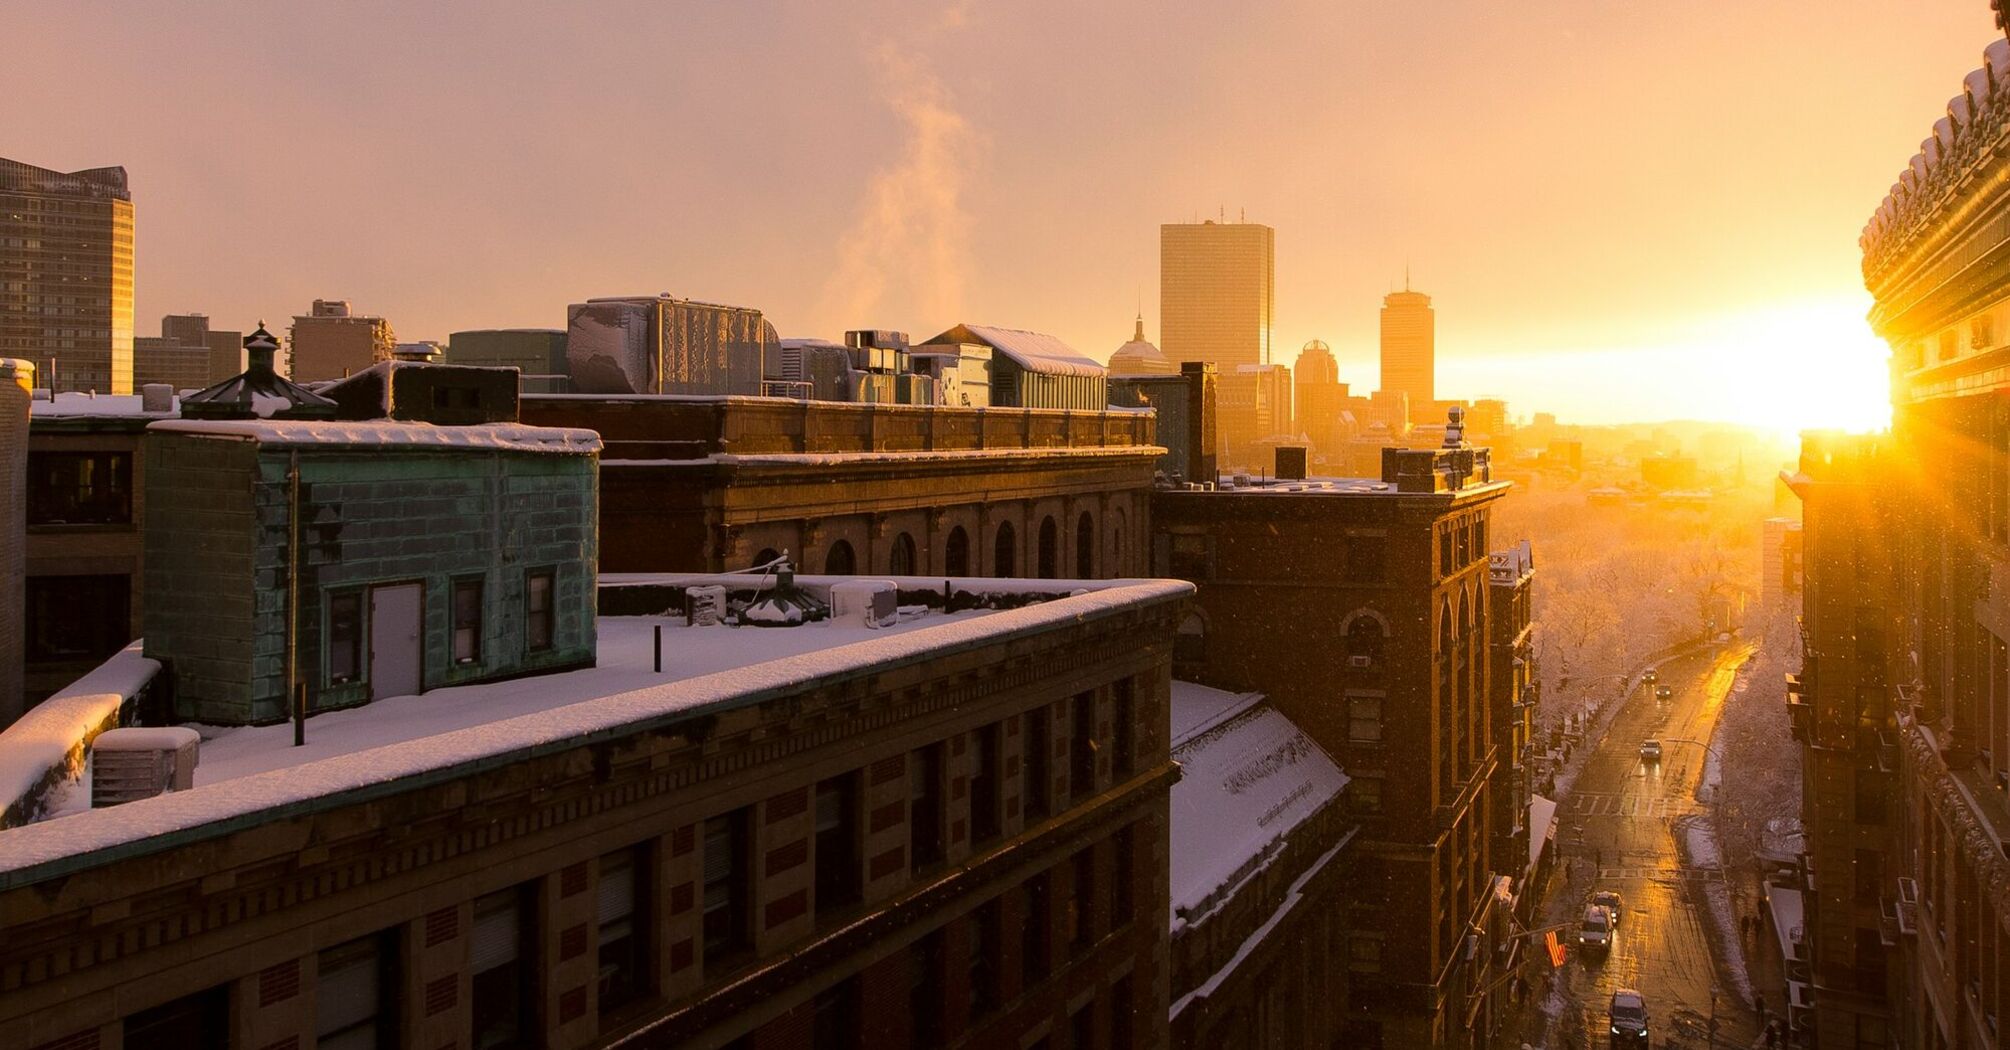 Sunrise over a snowy Boston skyline